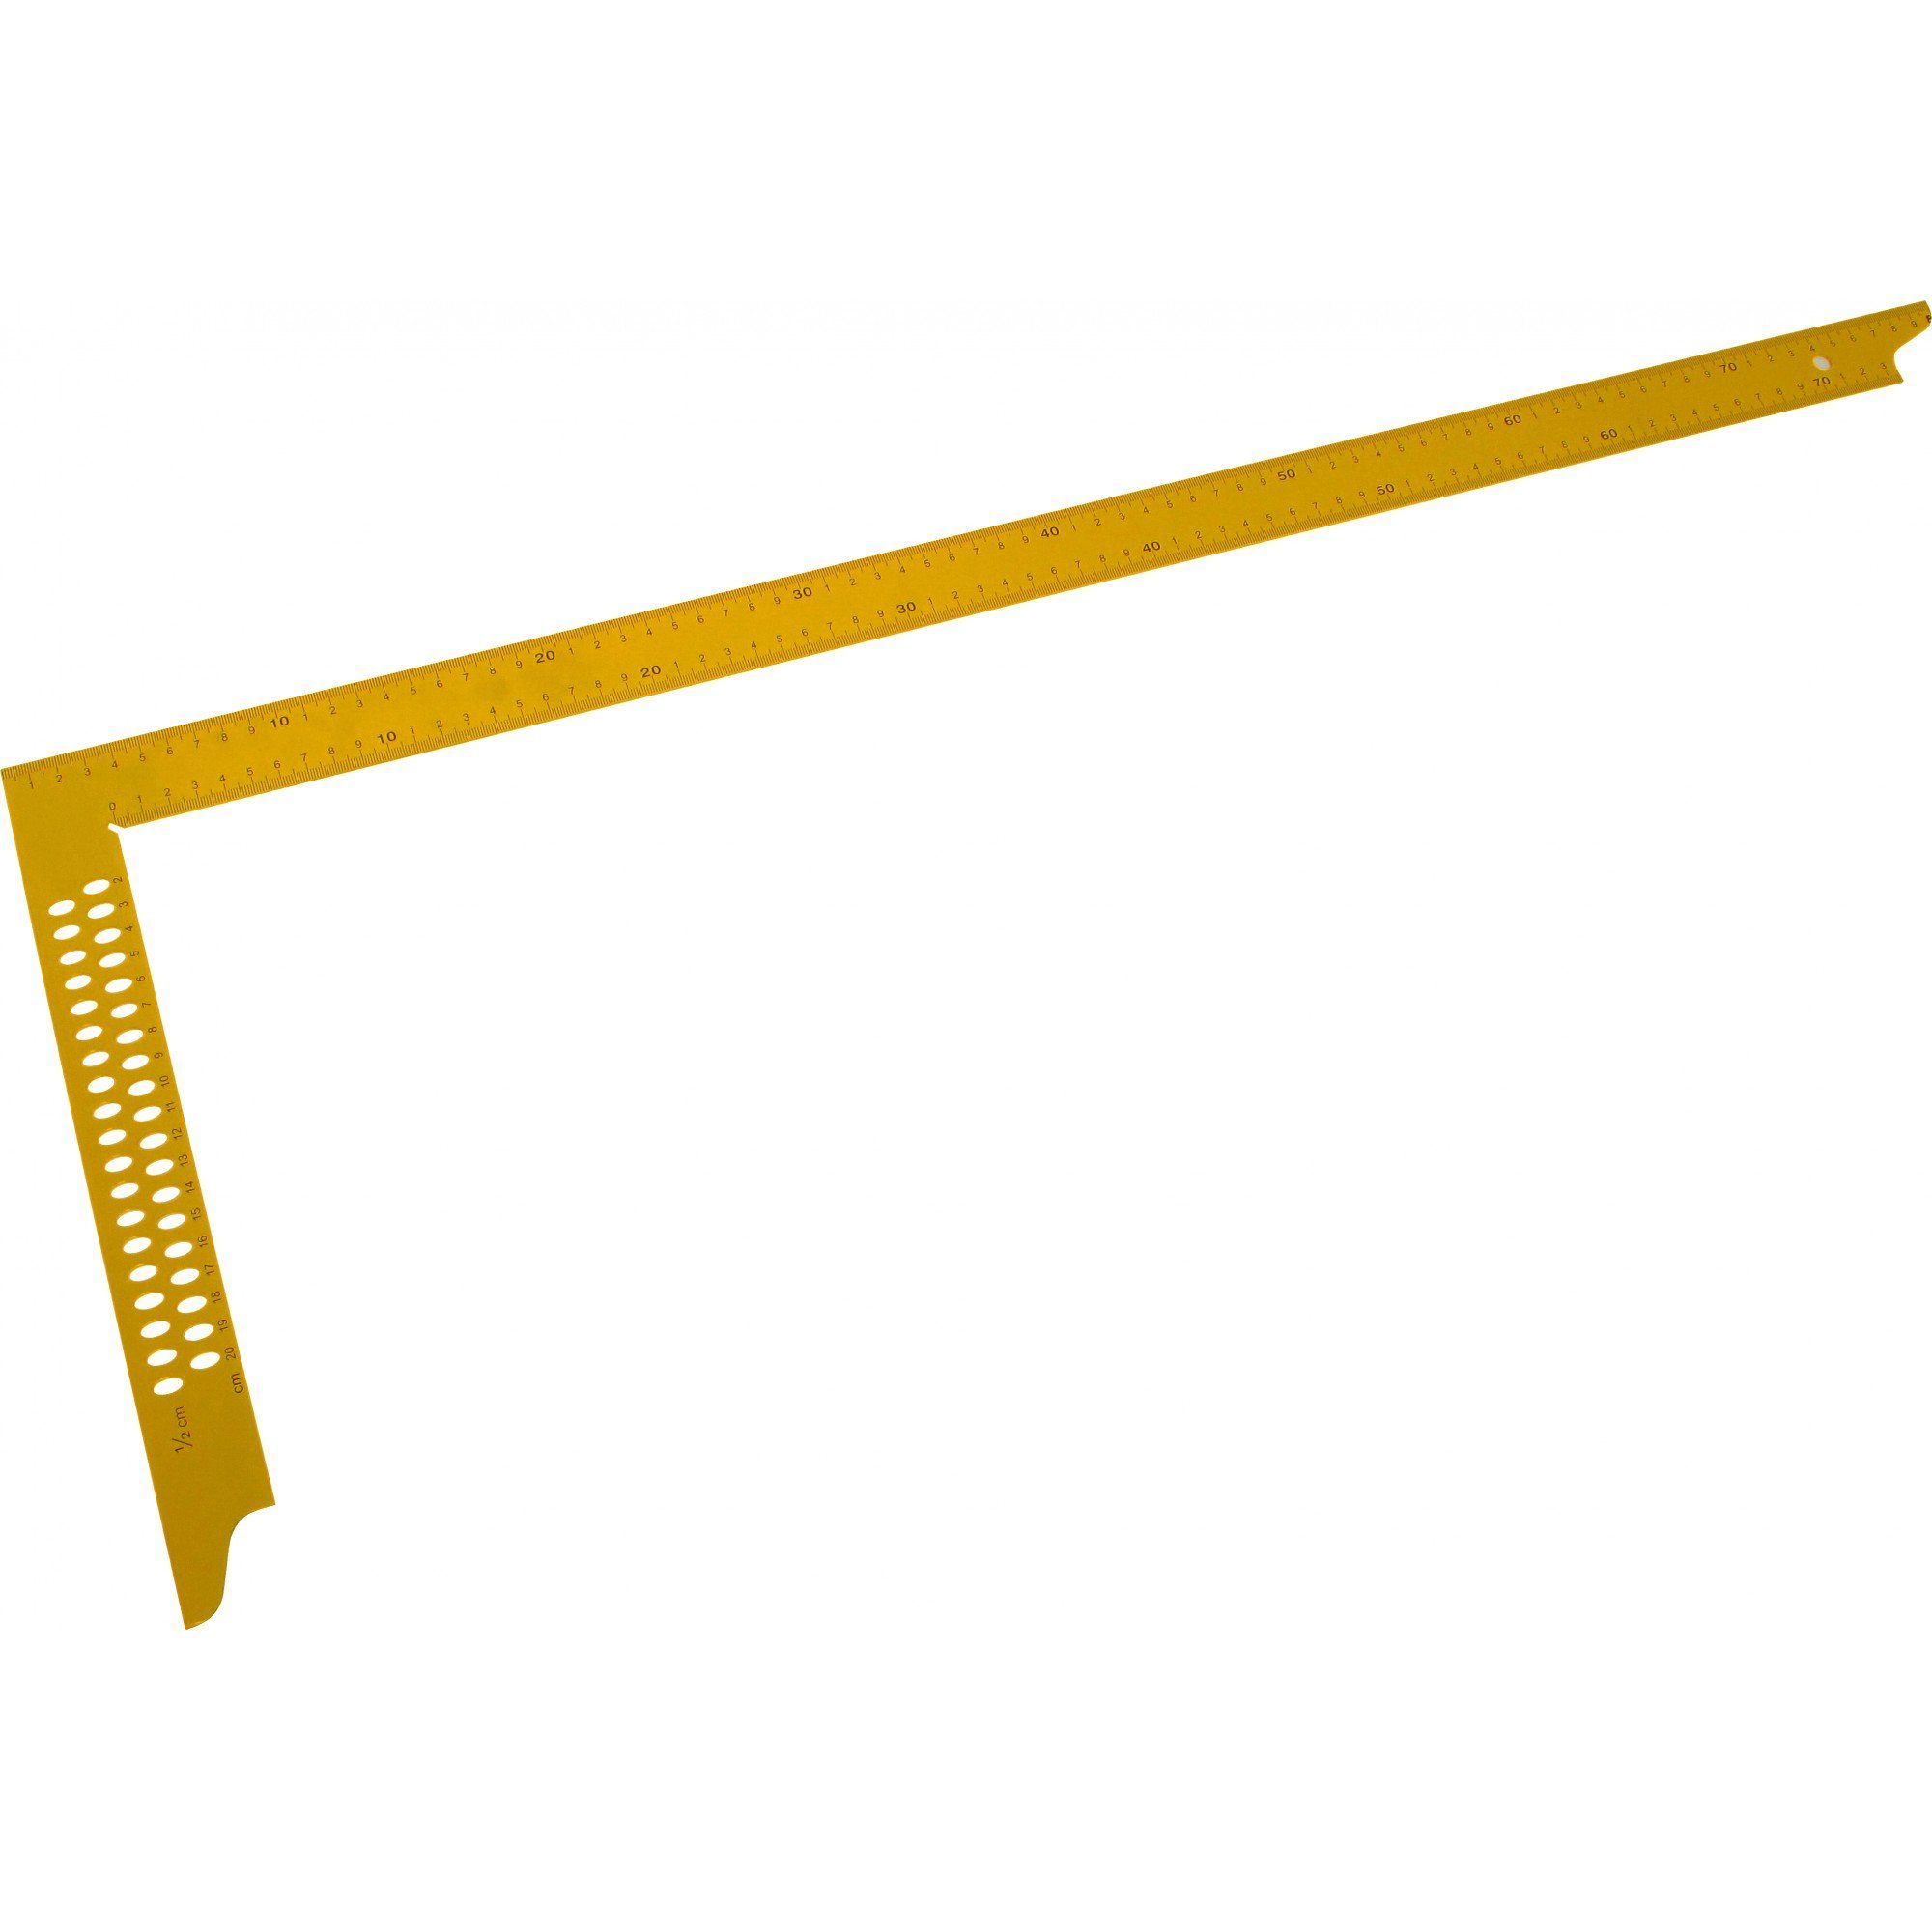 Offizieller Store Triuso Zimmermannswinkel Winkel 800 mm Anreißlöchern gelb lackiert, und mit Maßeinteilung